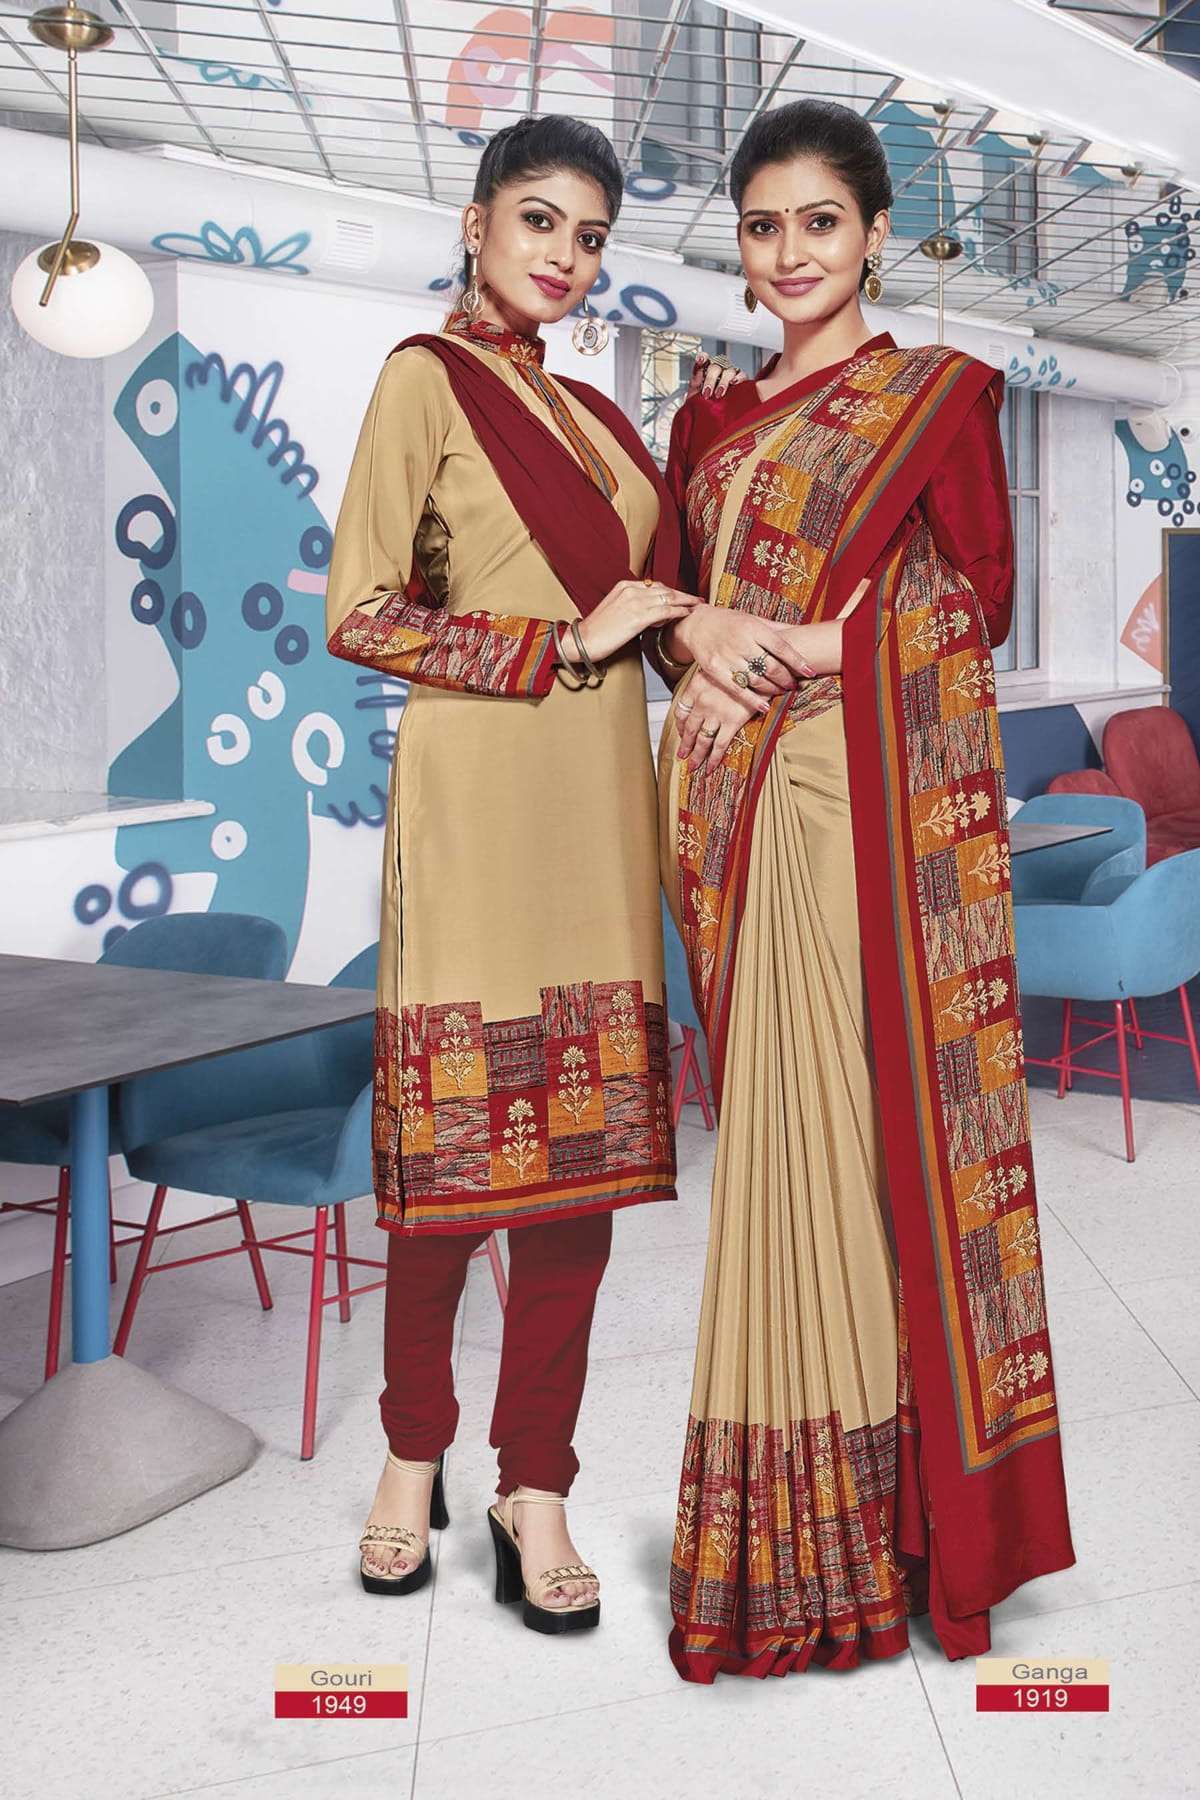 bansi ganga and gauri silk crepe uniform saree and uniform salwar kameez 19 2022 11 22 14 50 54